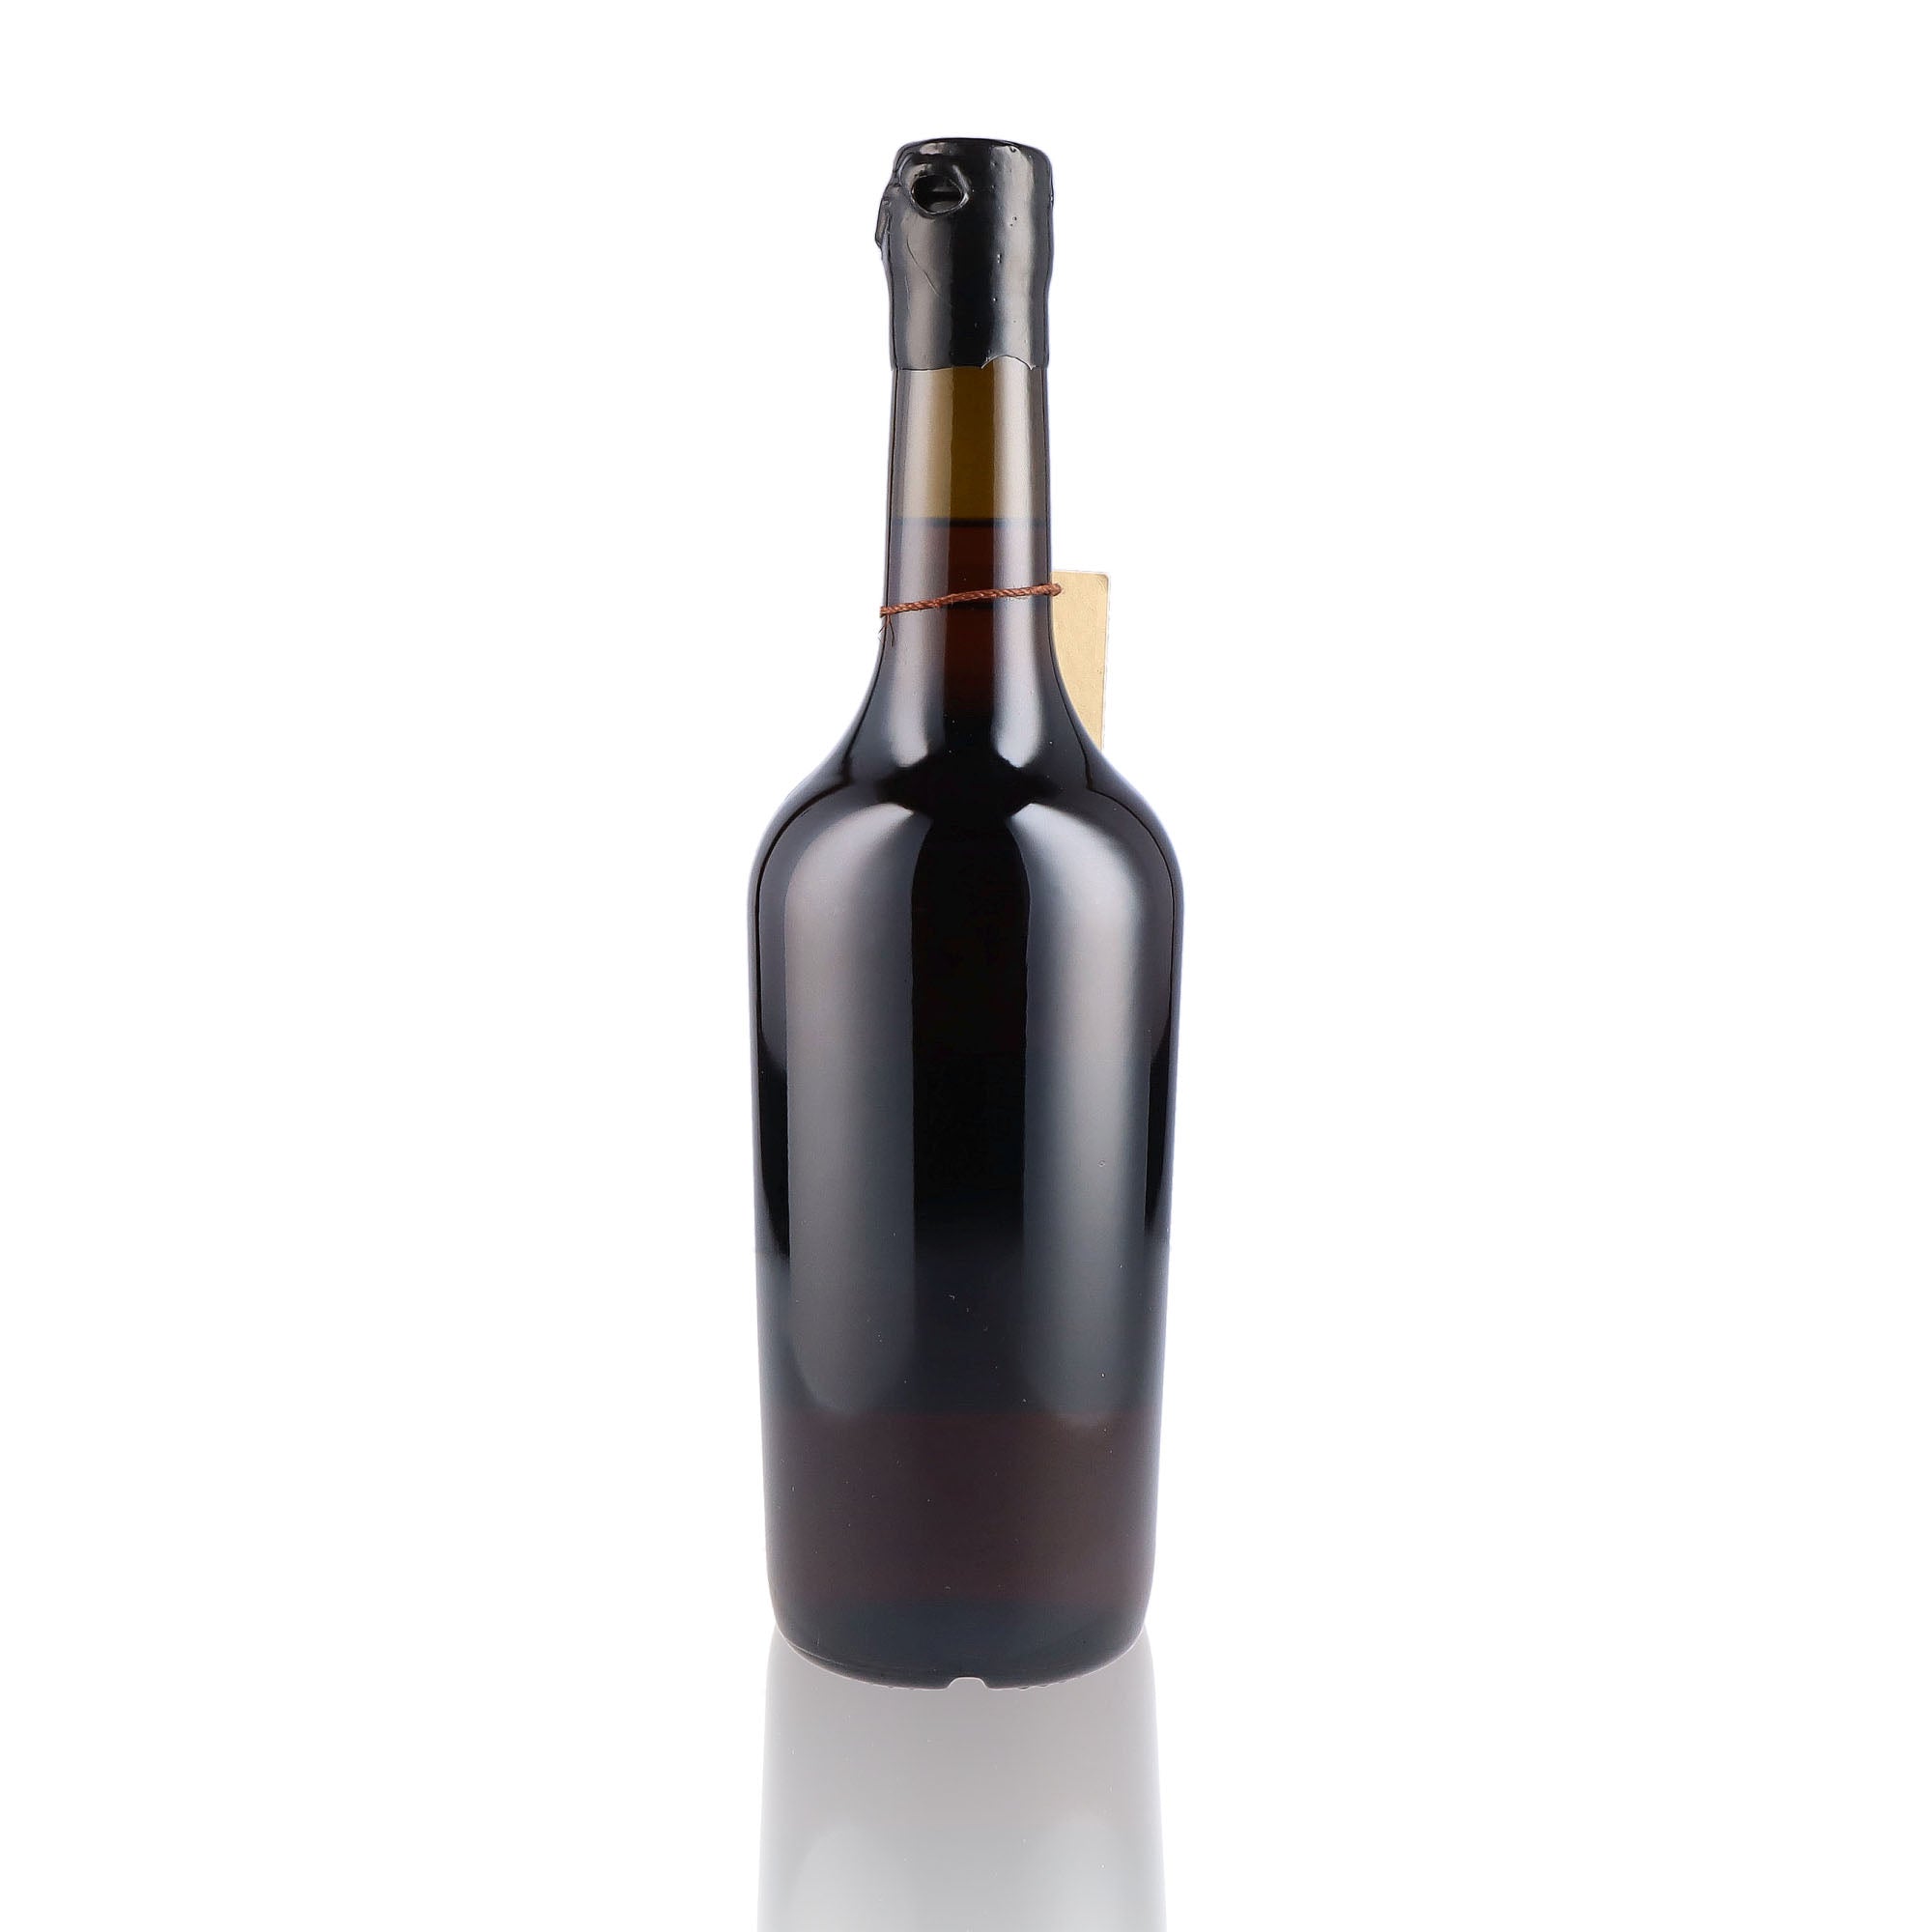 Une bouteille de Calvados, de la marque Roger Groult, nommée Réserve Ancestrale.